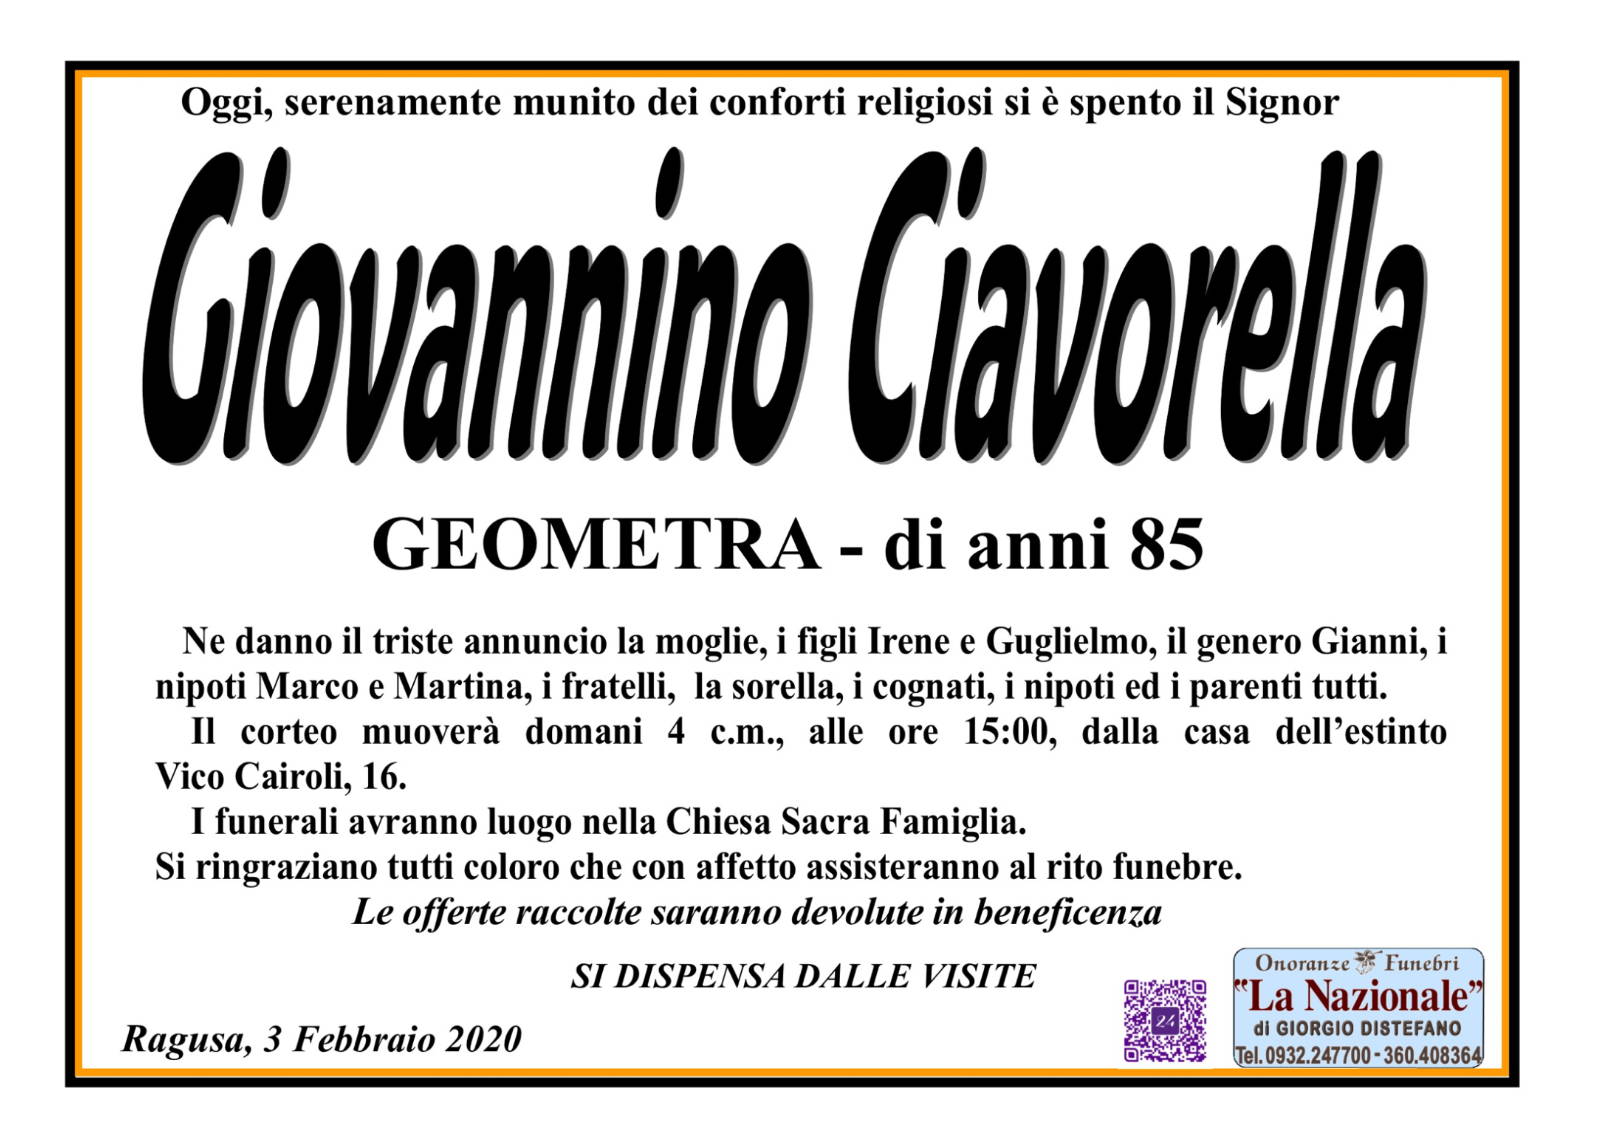 Giovannino Ciavorella